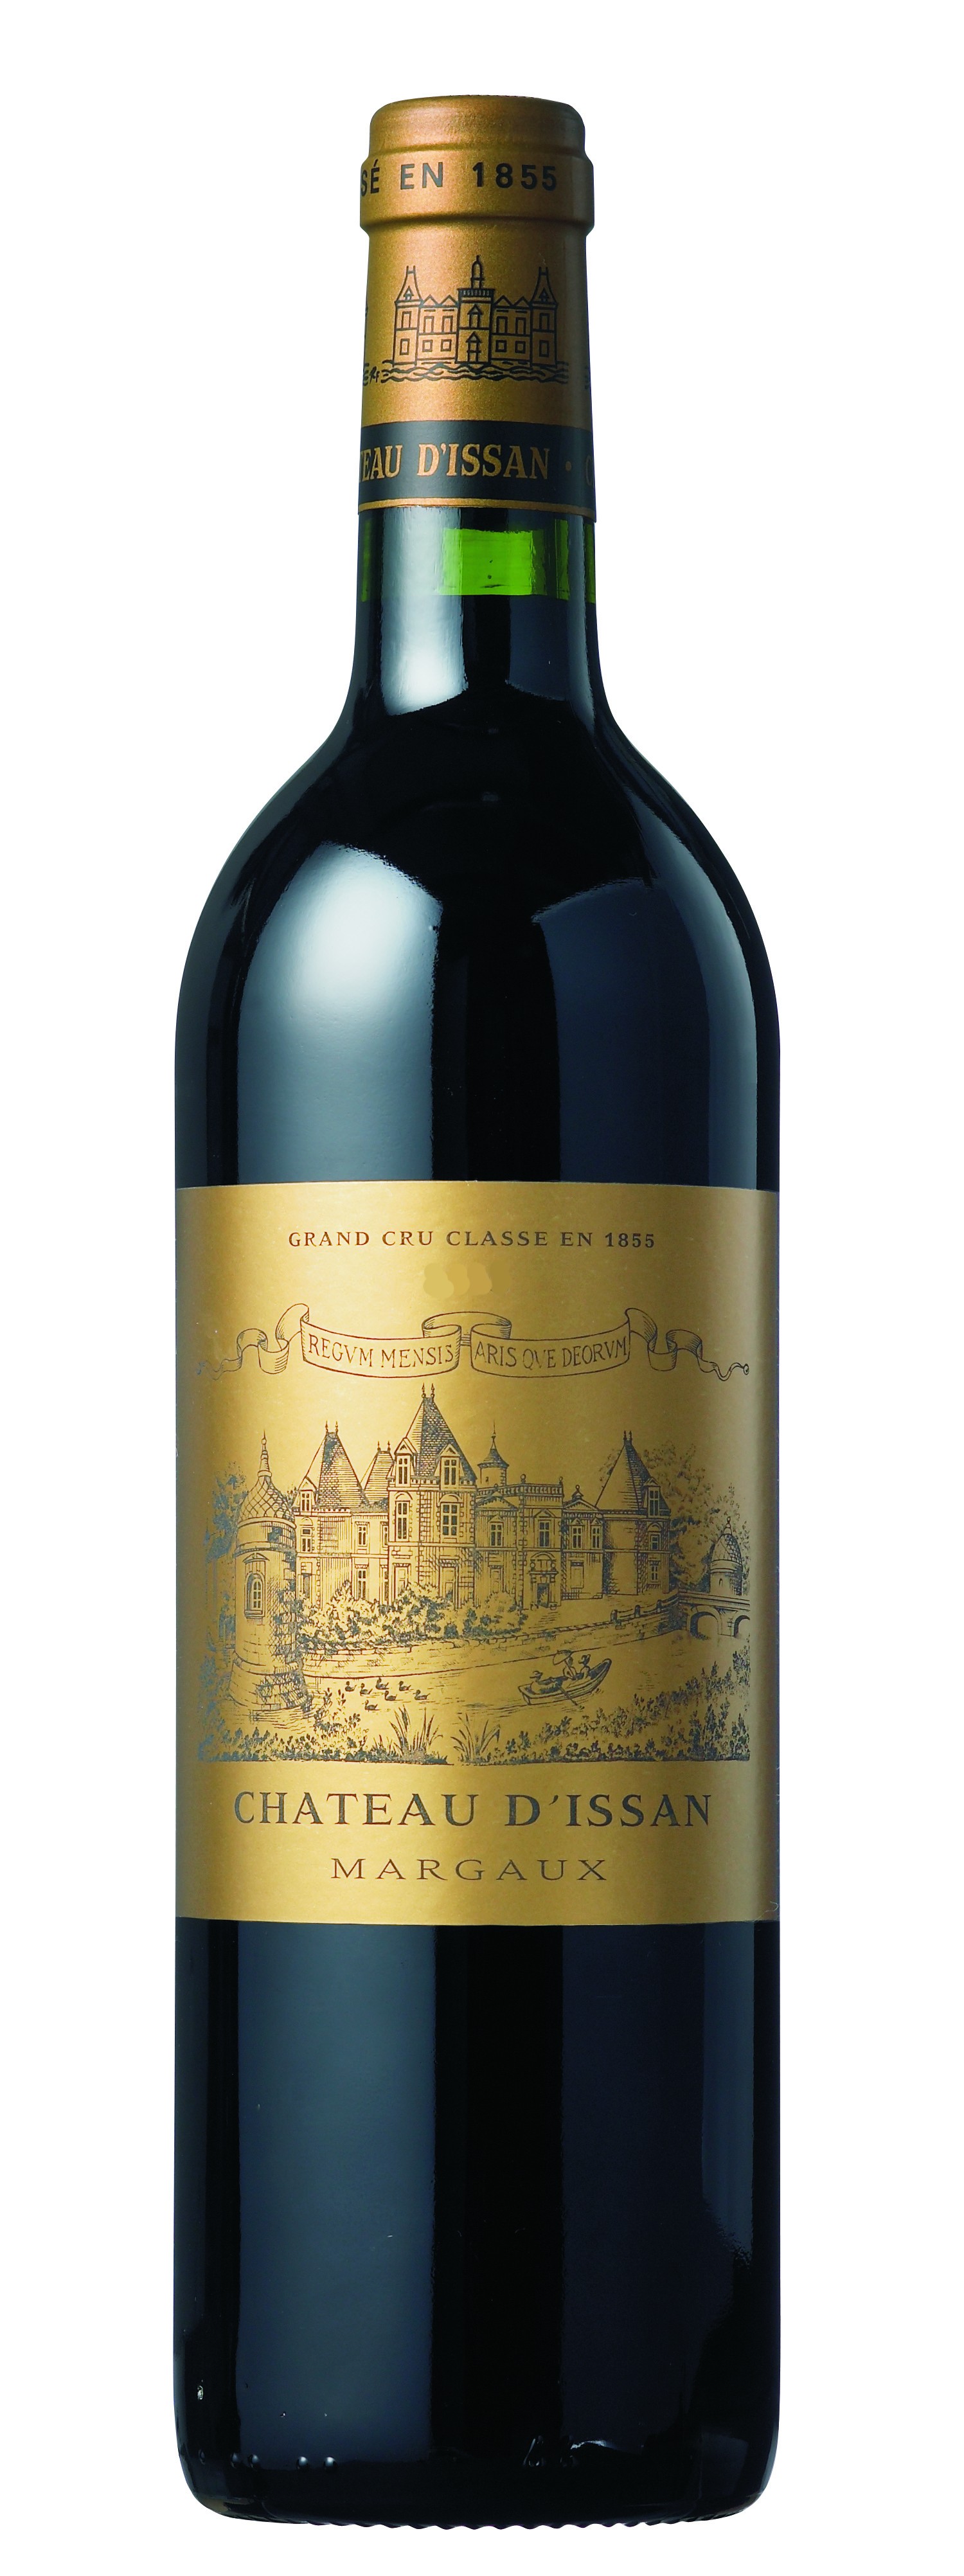 Chateau D'issan Margaux - Rượu vang Pháp nhập khẩu